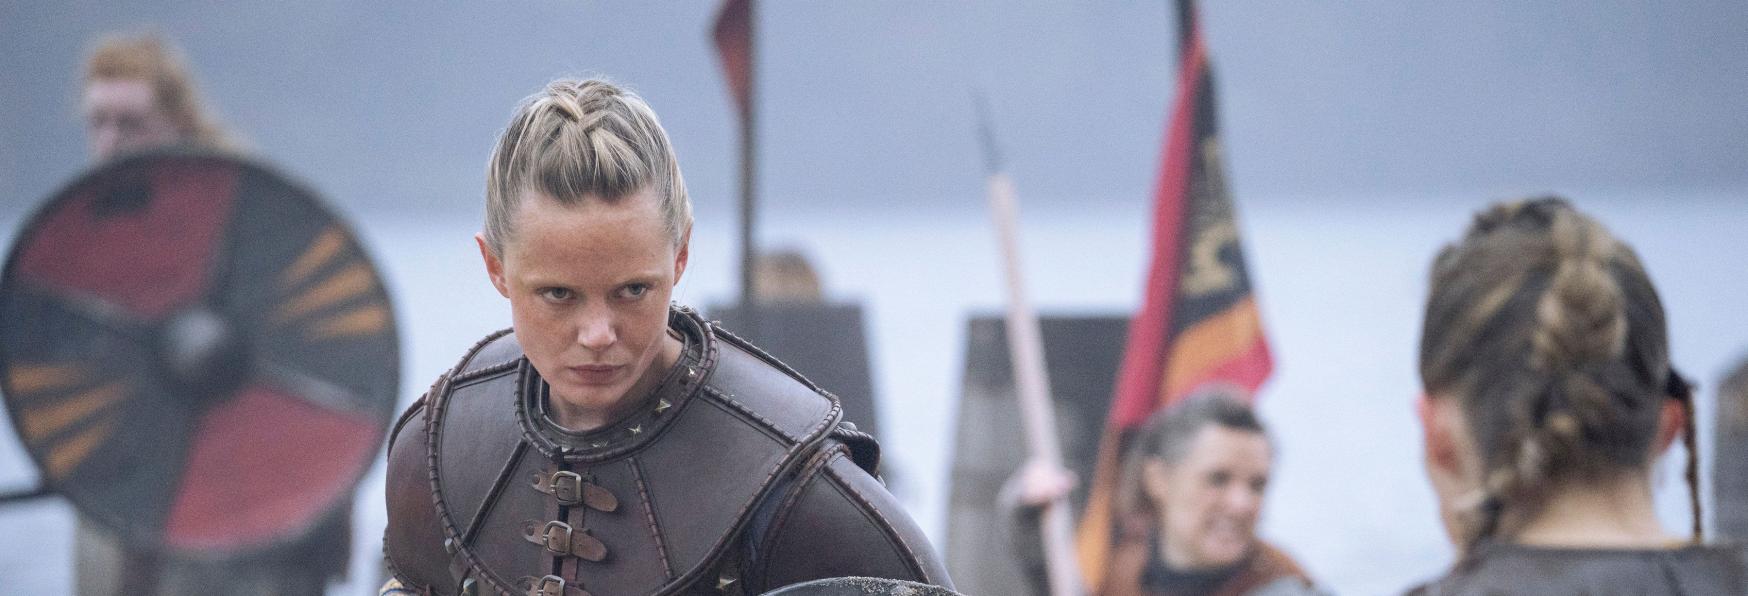 Vikings: Valhalla - Frida Gustavsson svela che il suo Personaggio è ispirato a Lagherta 